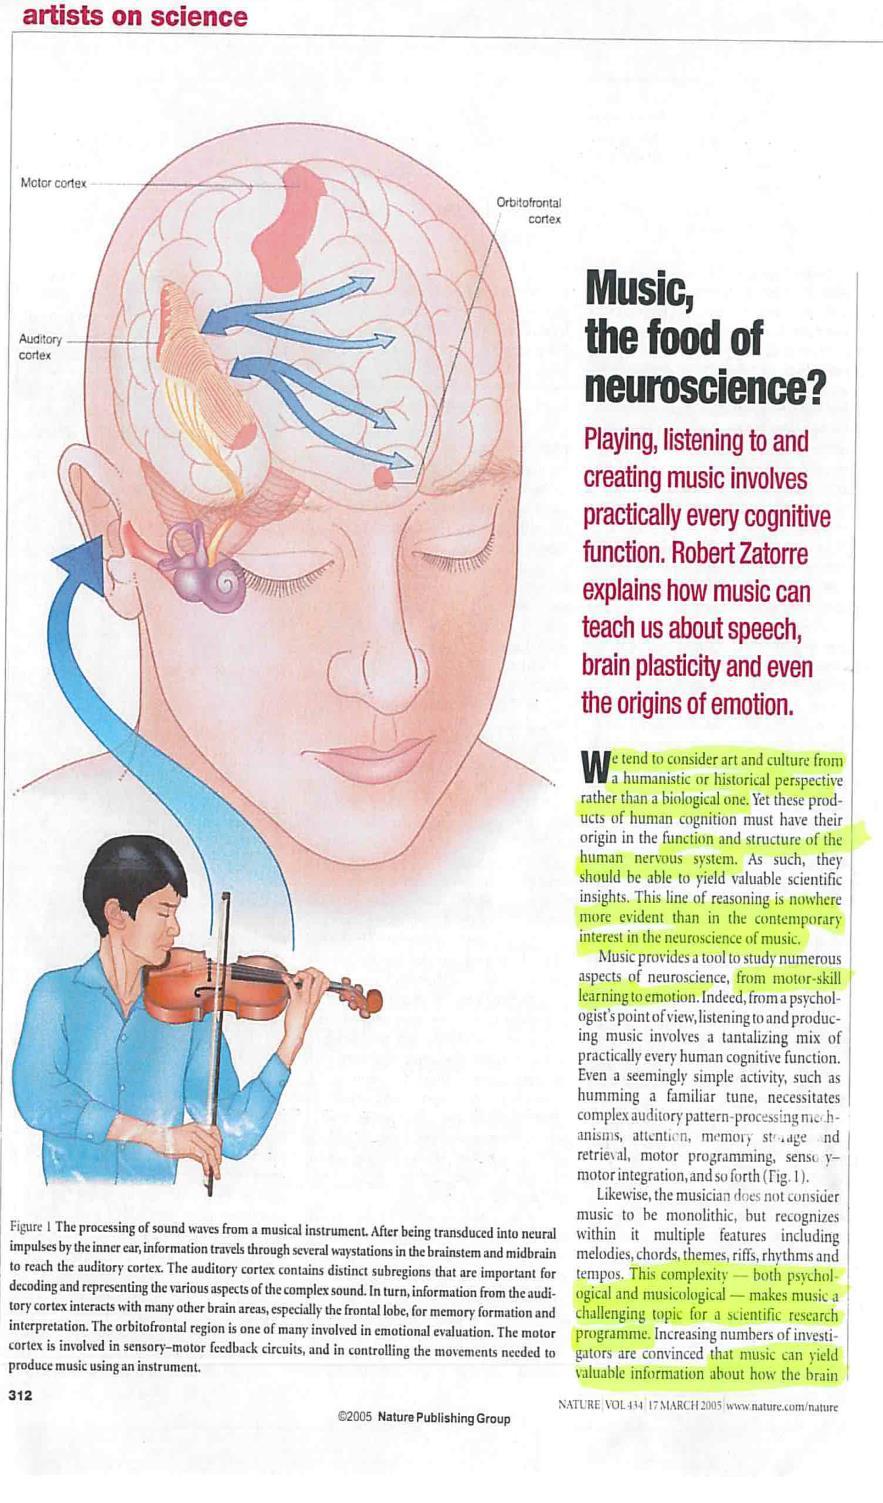 Å lytte til, skape og spille musikk involverer de aller fleste kognitive funksjoner i